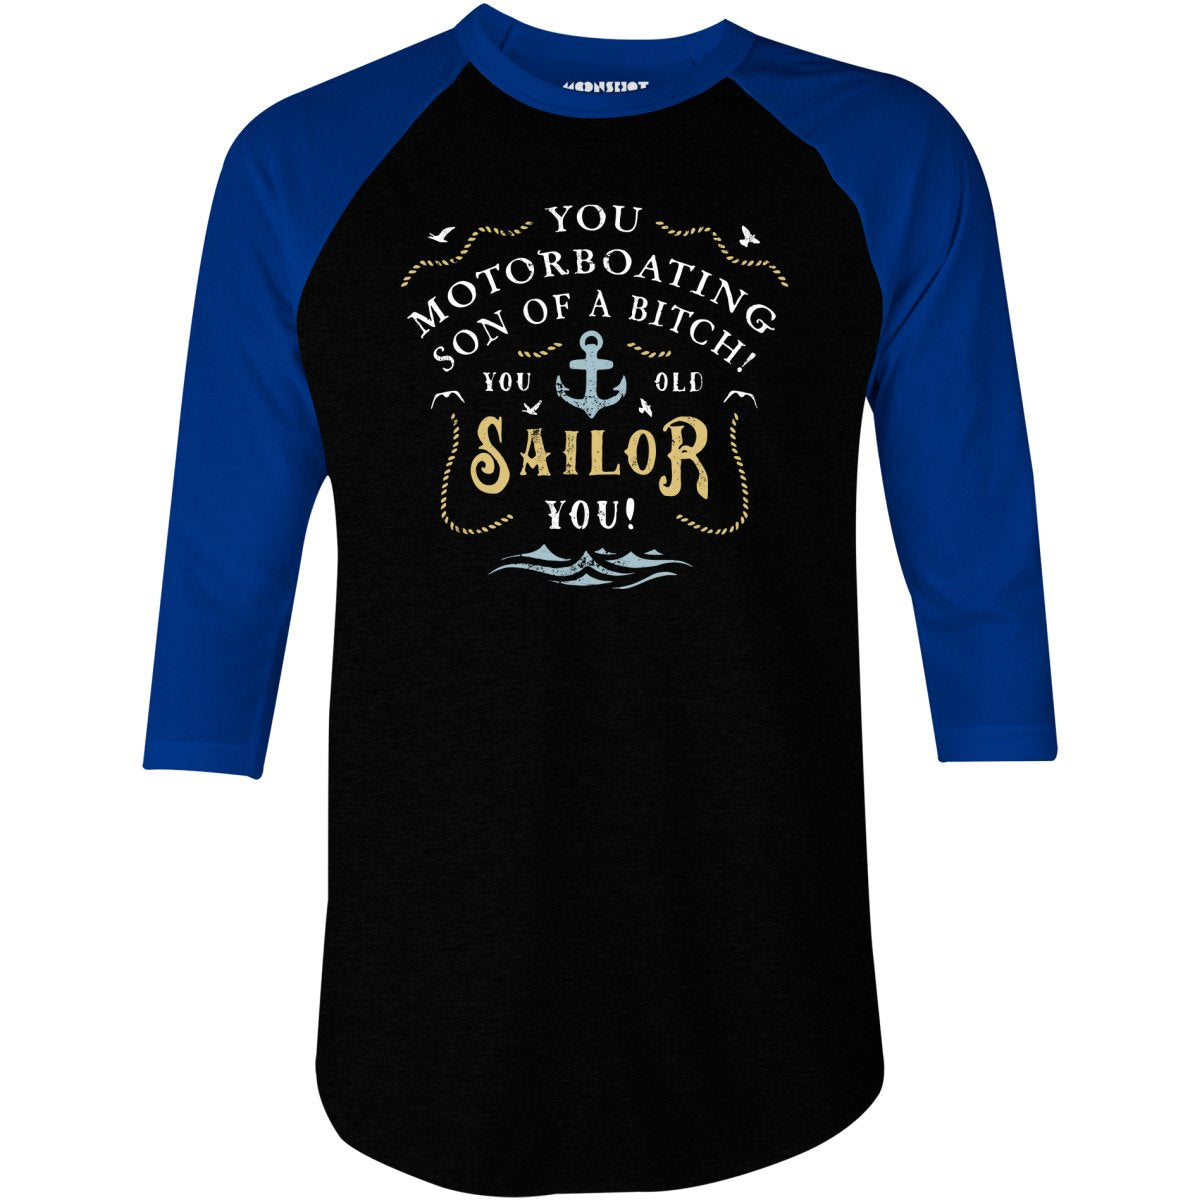 You Old Sailor You - 3/4 Sleeve Raglan T-Shirt